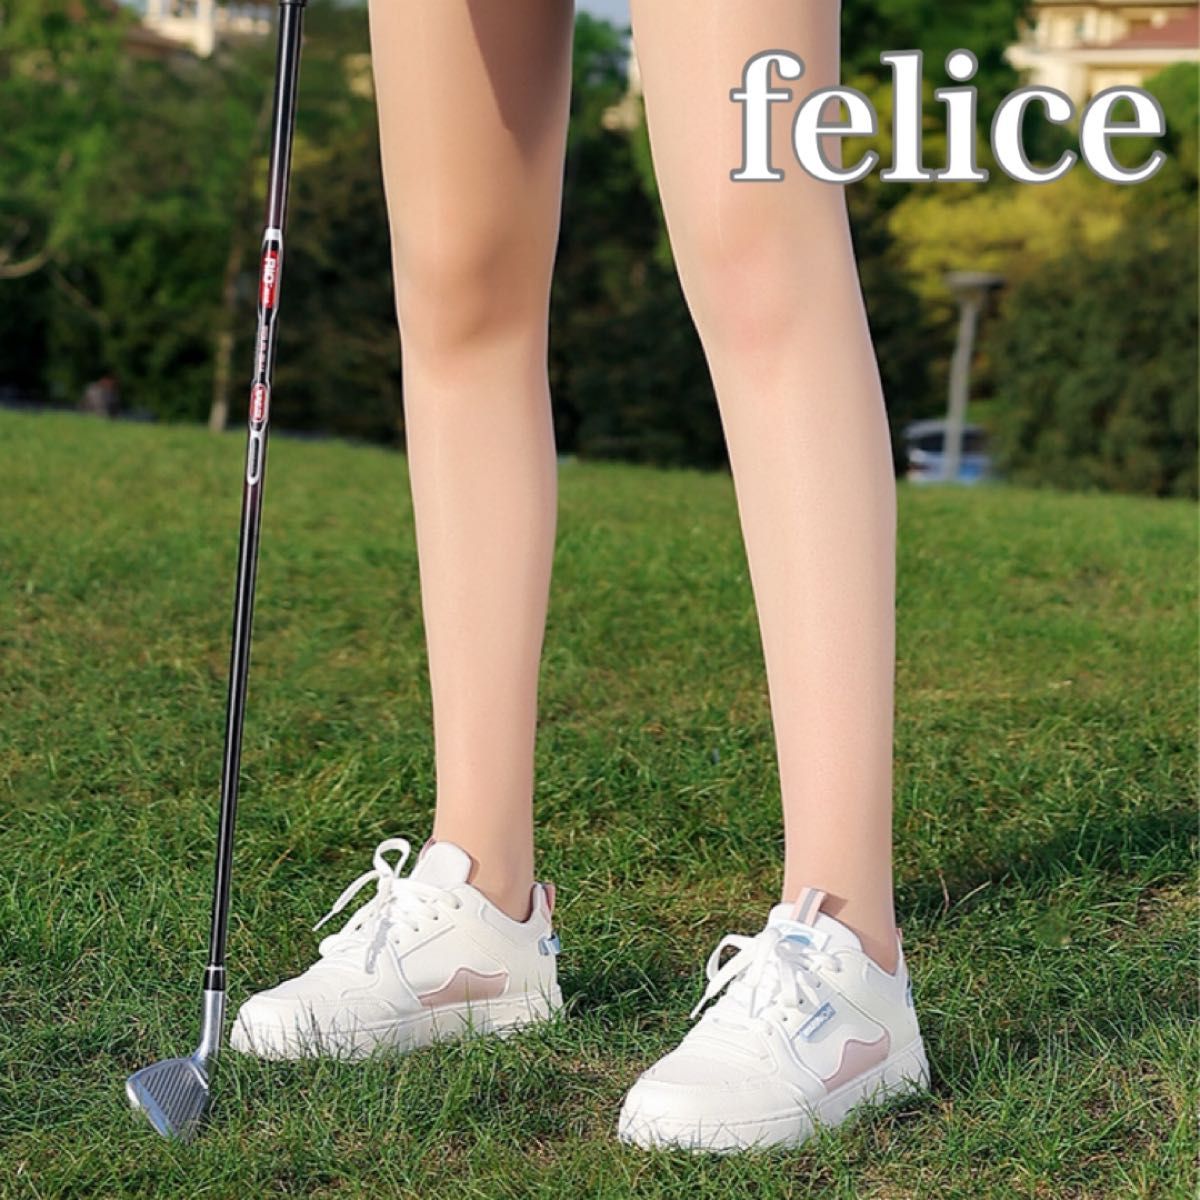 韓国 ゴルフ ウェア アームカバー ストッキング UVカット 肌色 スポーツ 美脚 美尻